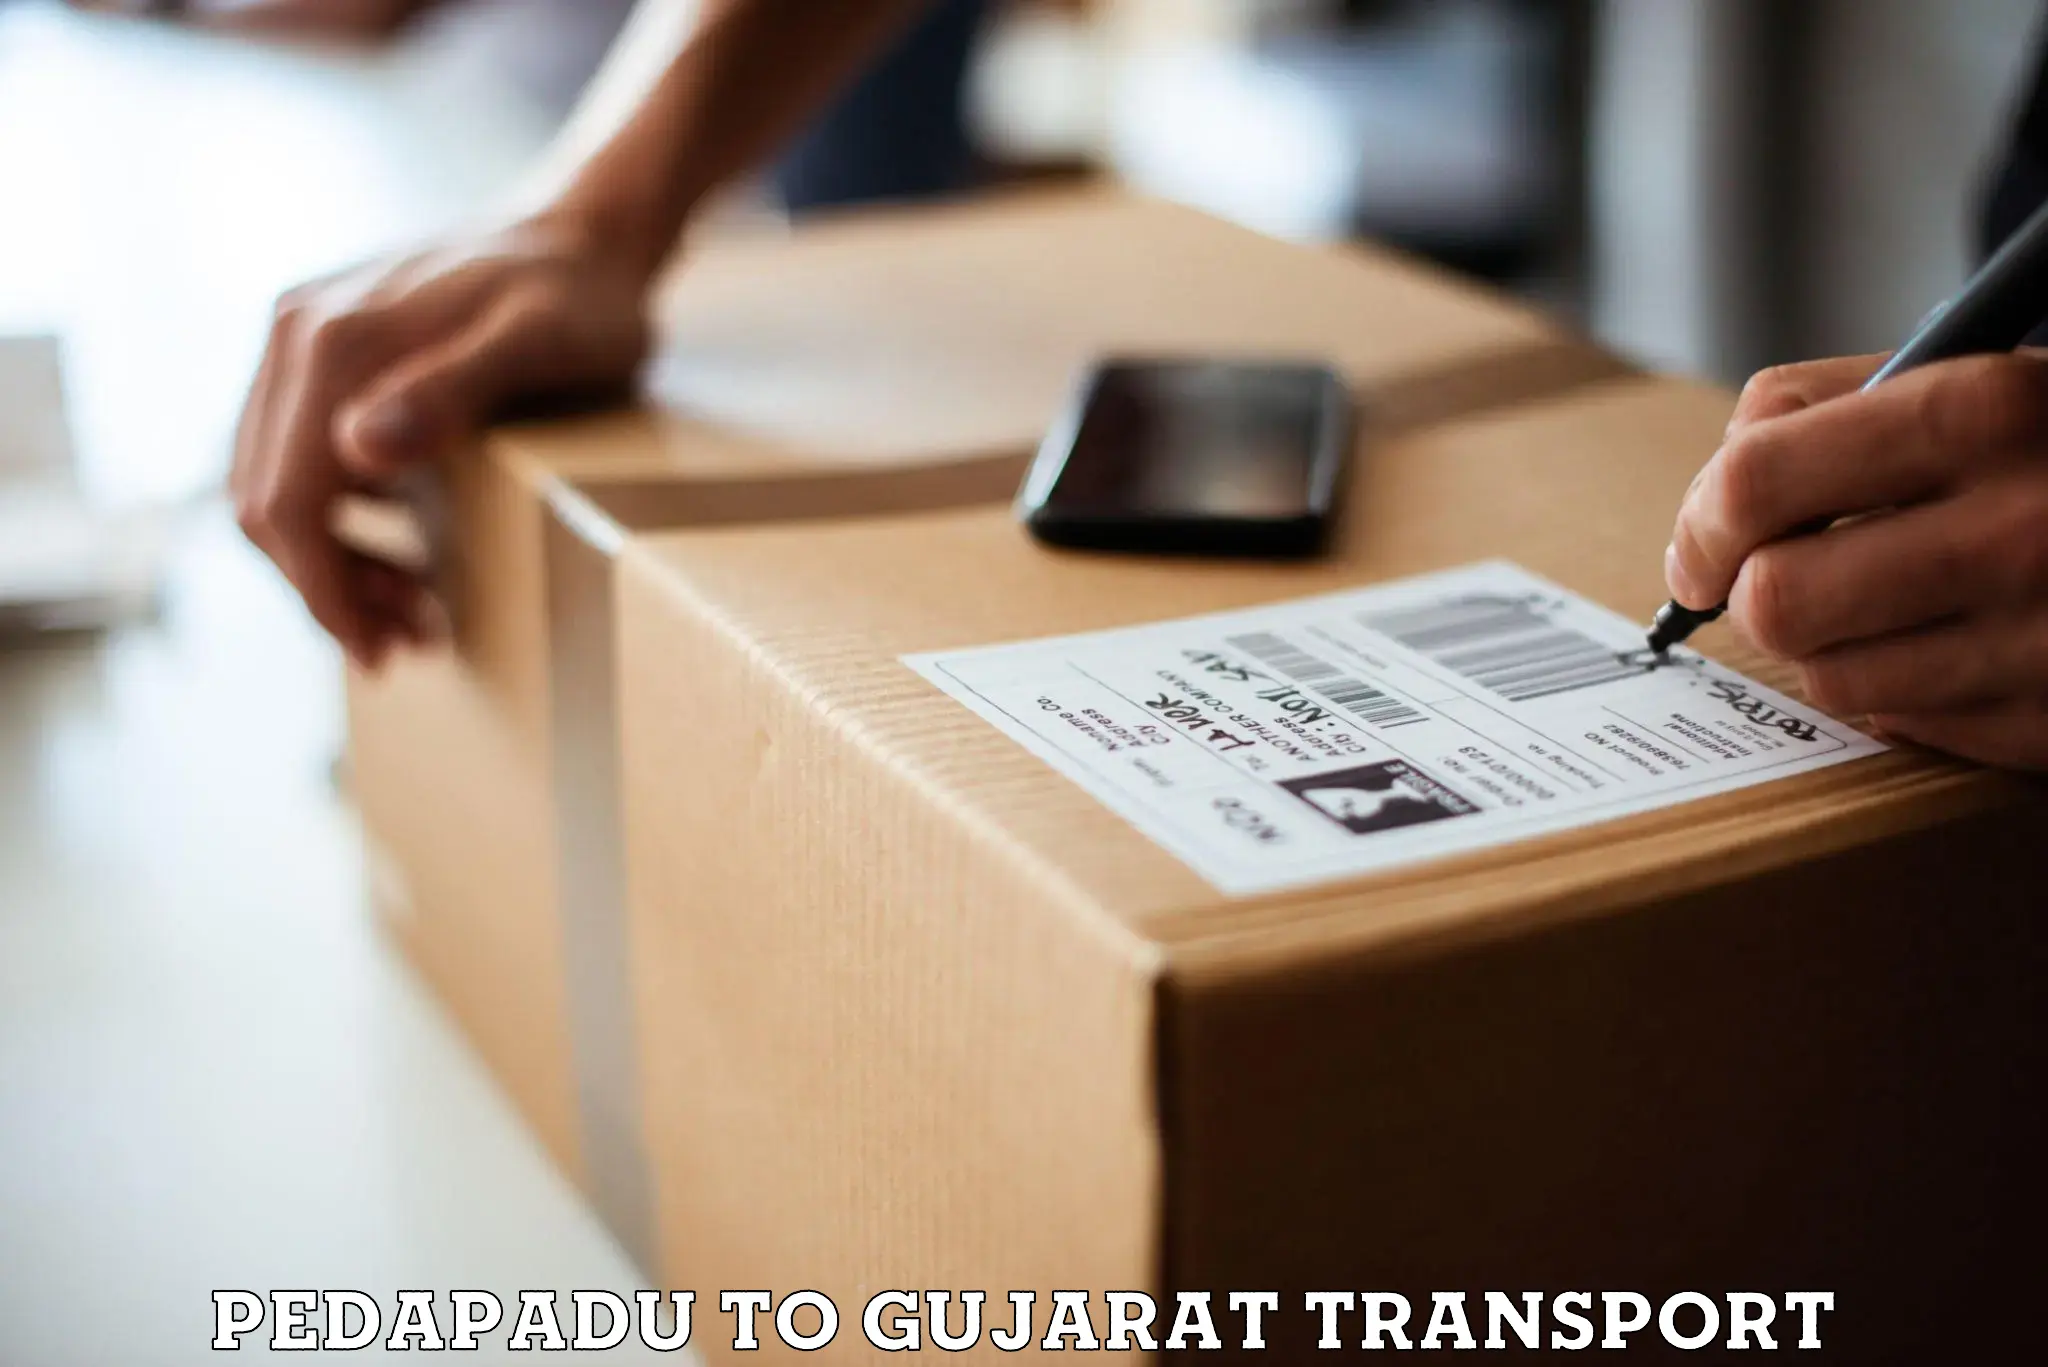 Furniture transport service Pedapadu to Hansot